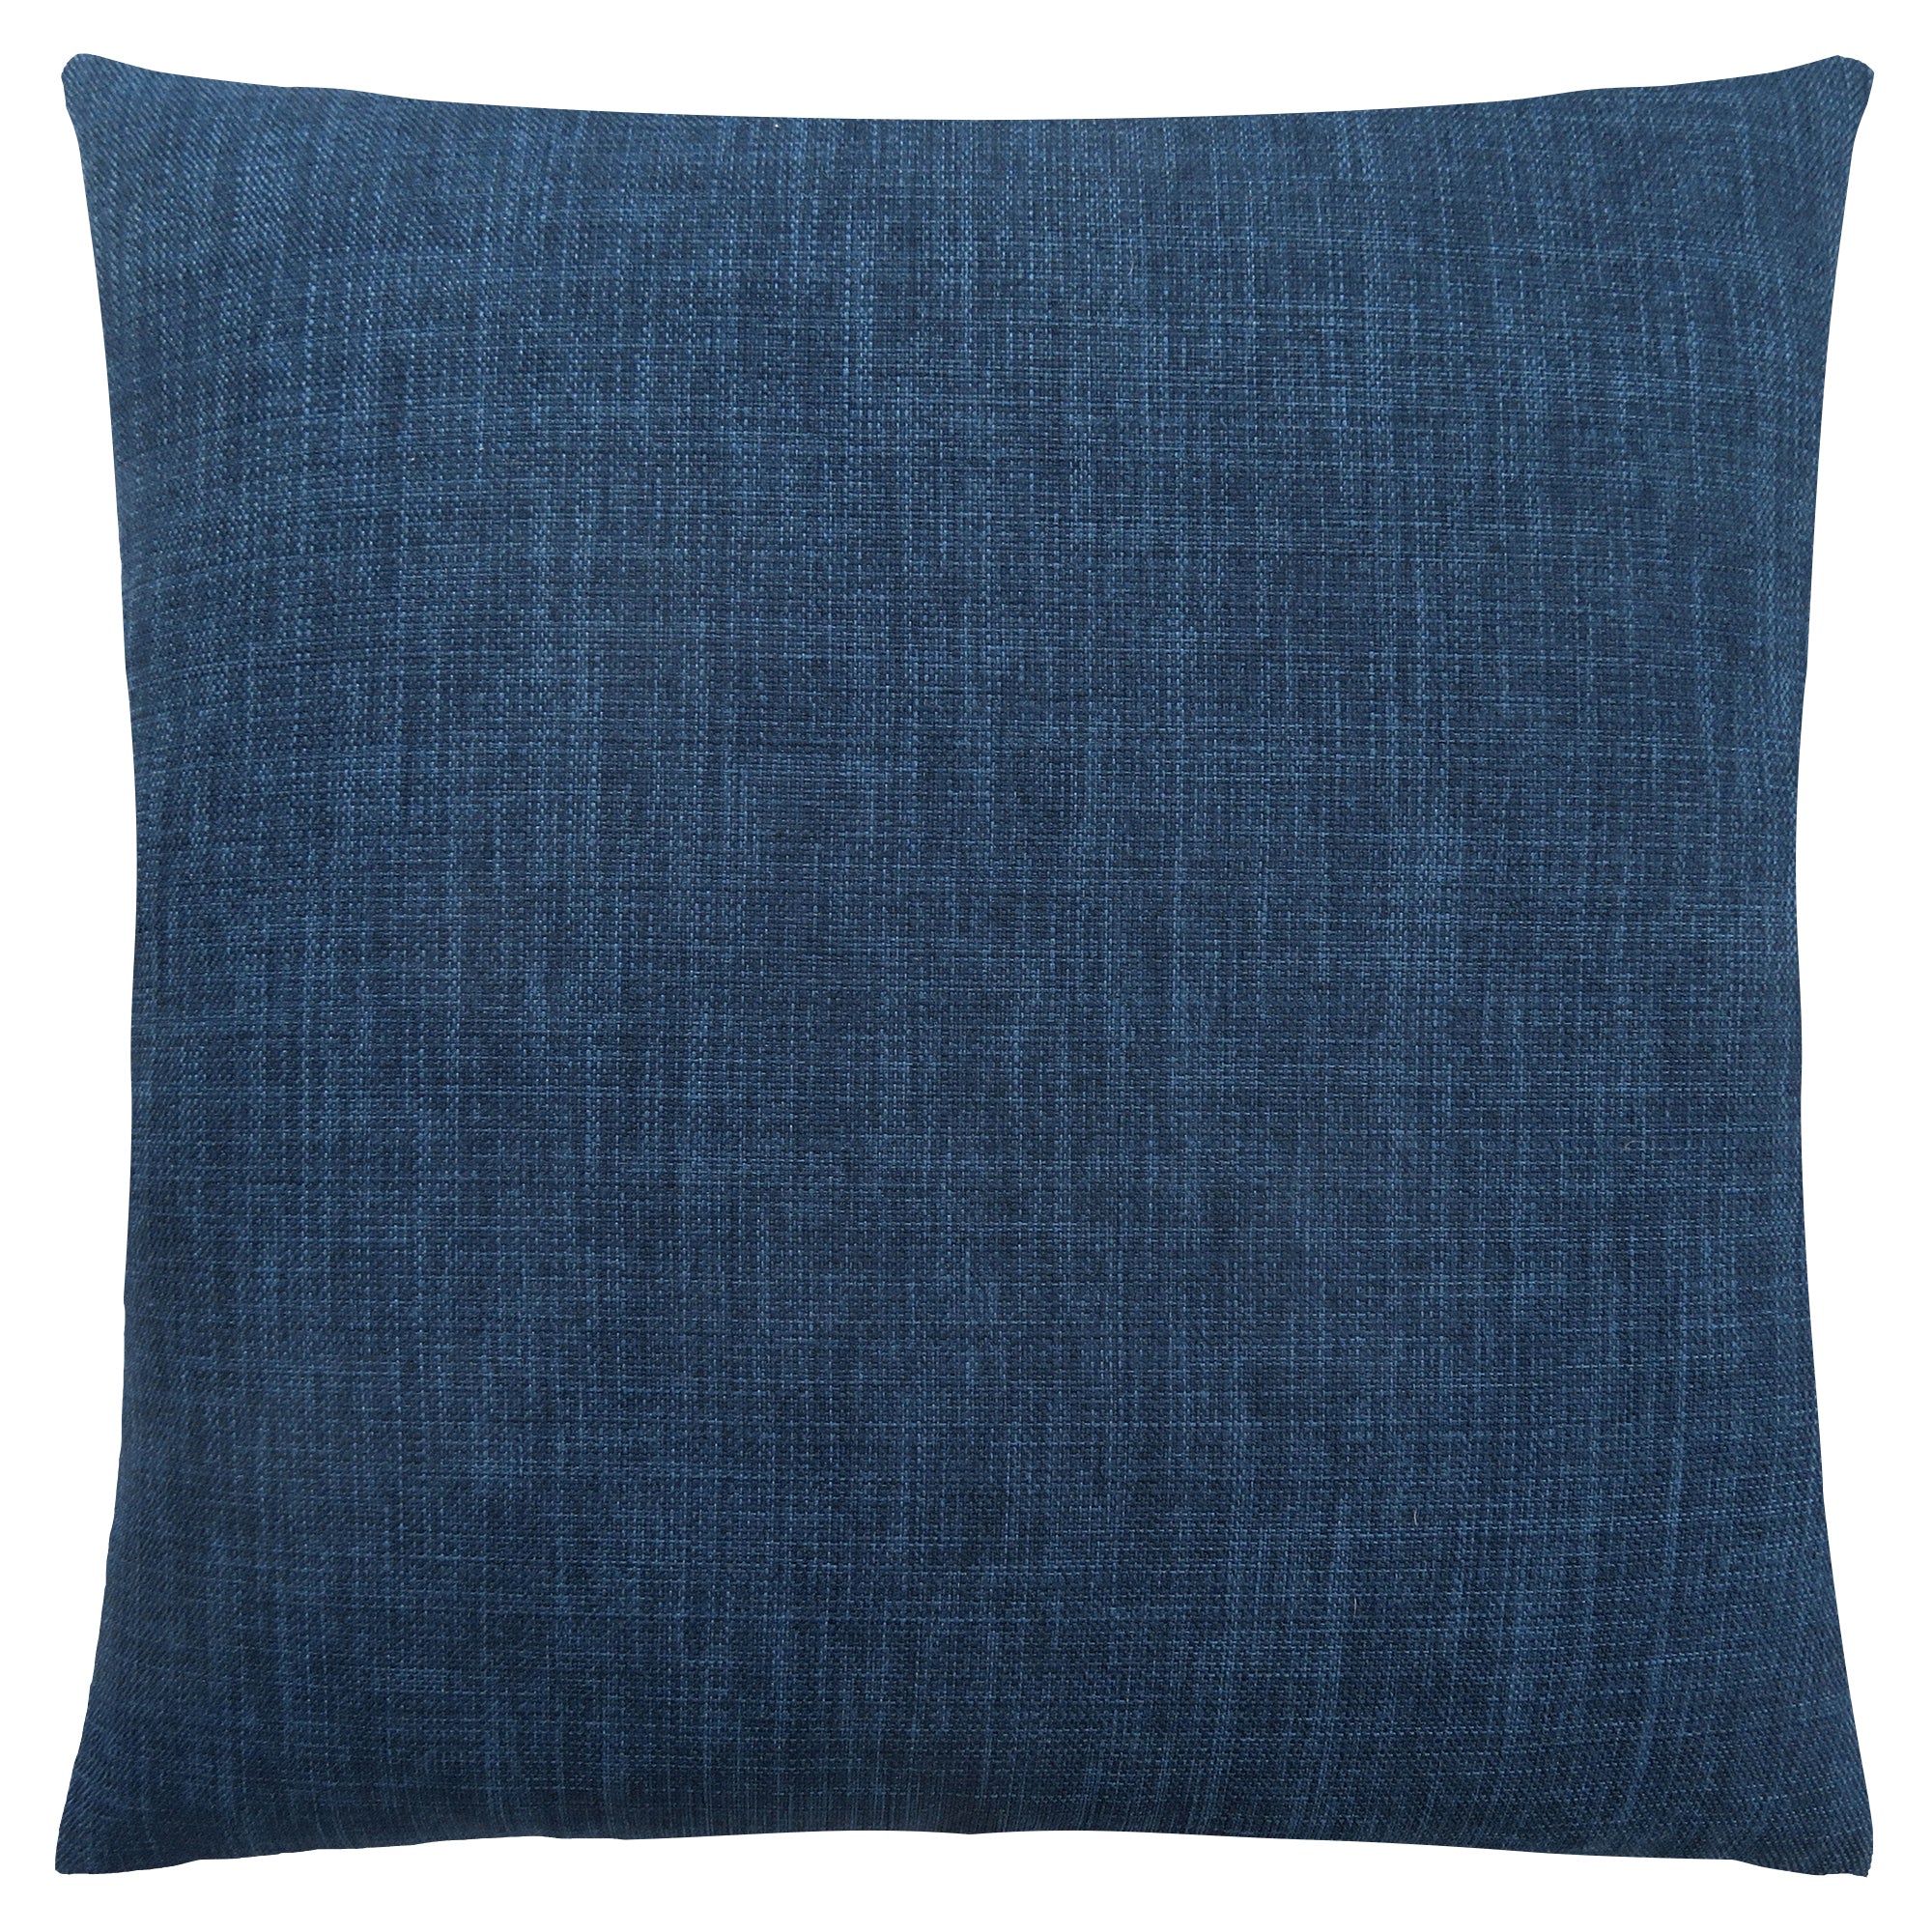 Pillow - 18X 18 / Linen Patterned Dark Blue / 1Pc